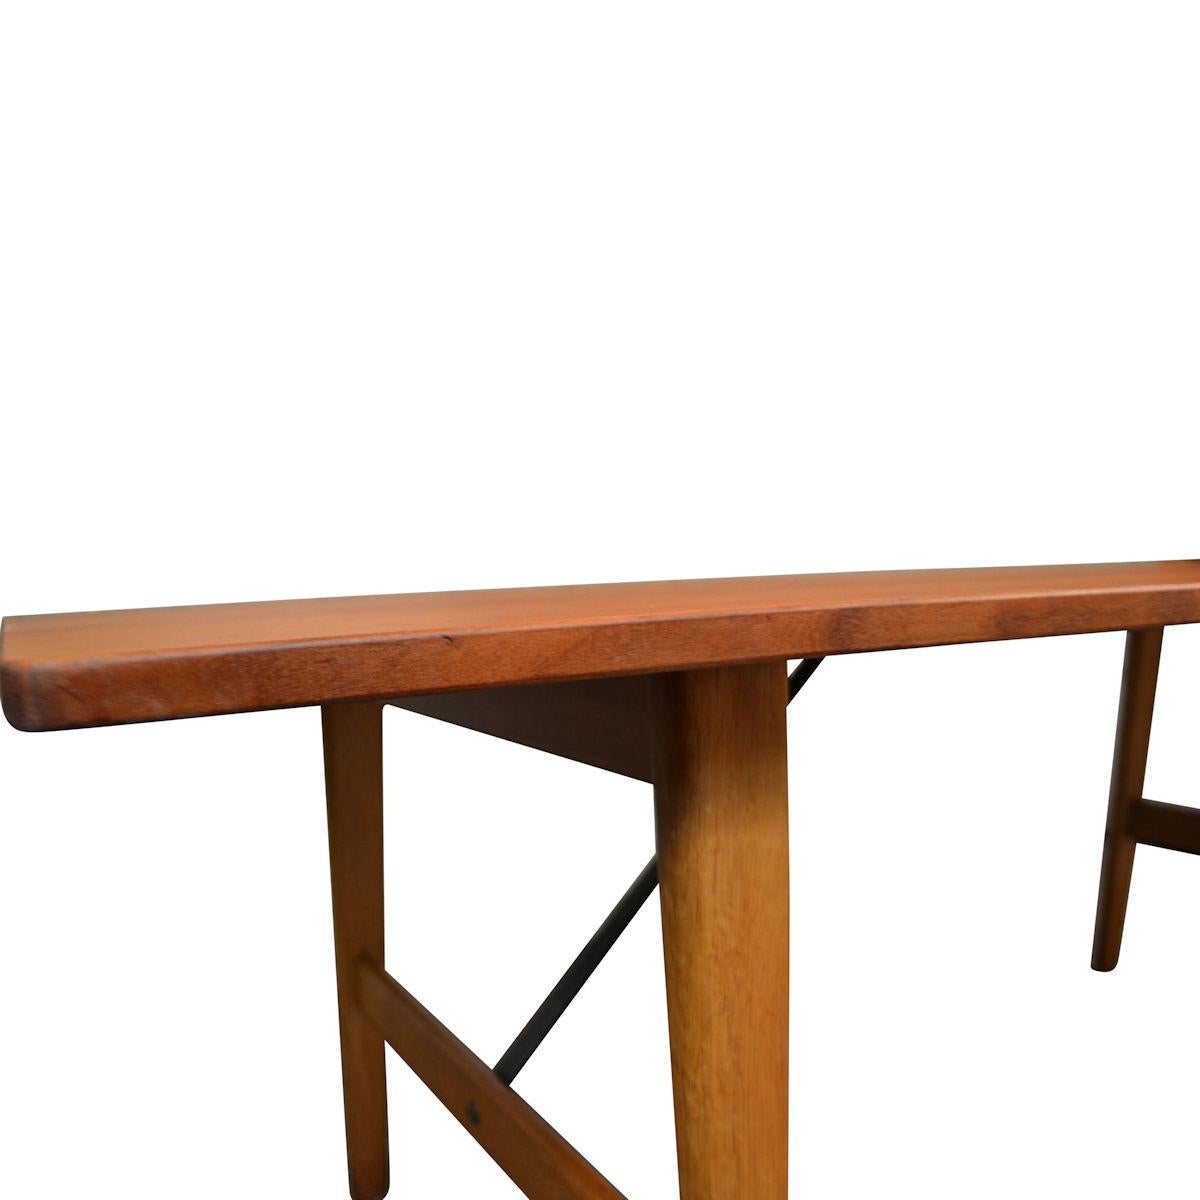 Mid-20th Century Danish Design Børge Mogensen Teak Lounge Table, Model 281